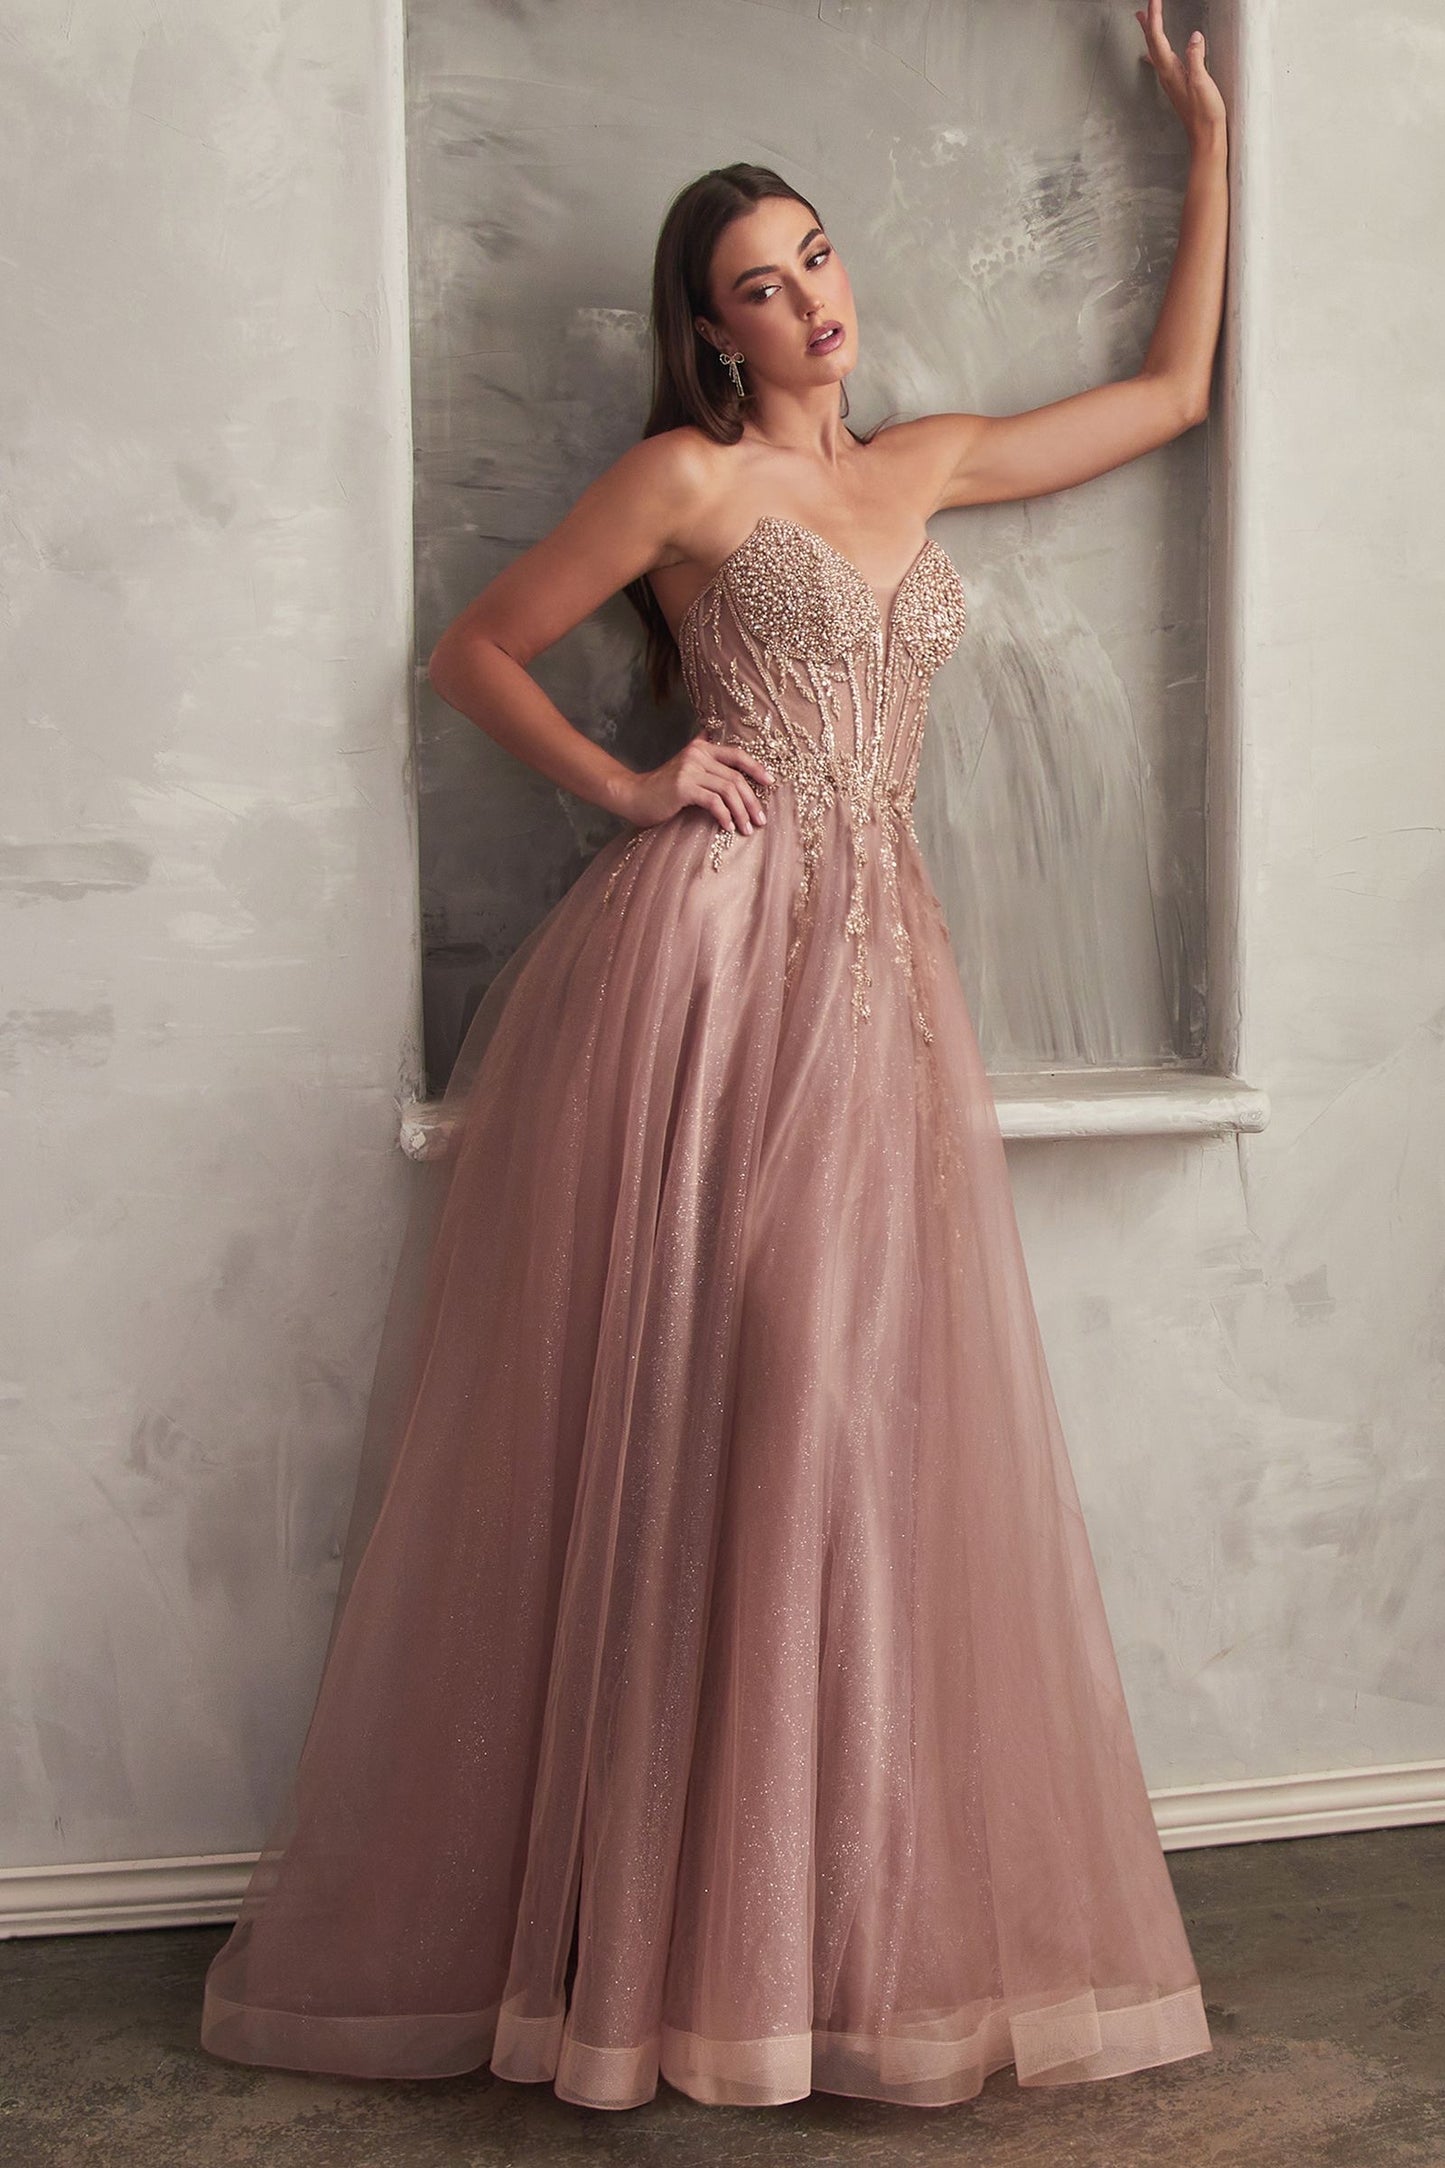 Elegante y glamoroso vestido de gala presenta un corpiño adornado con cuentas de pedrería y una fabulosa falda de tul brillante en capas